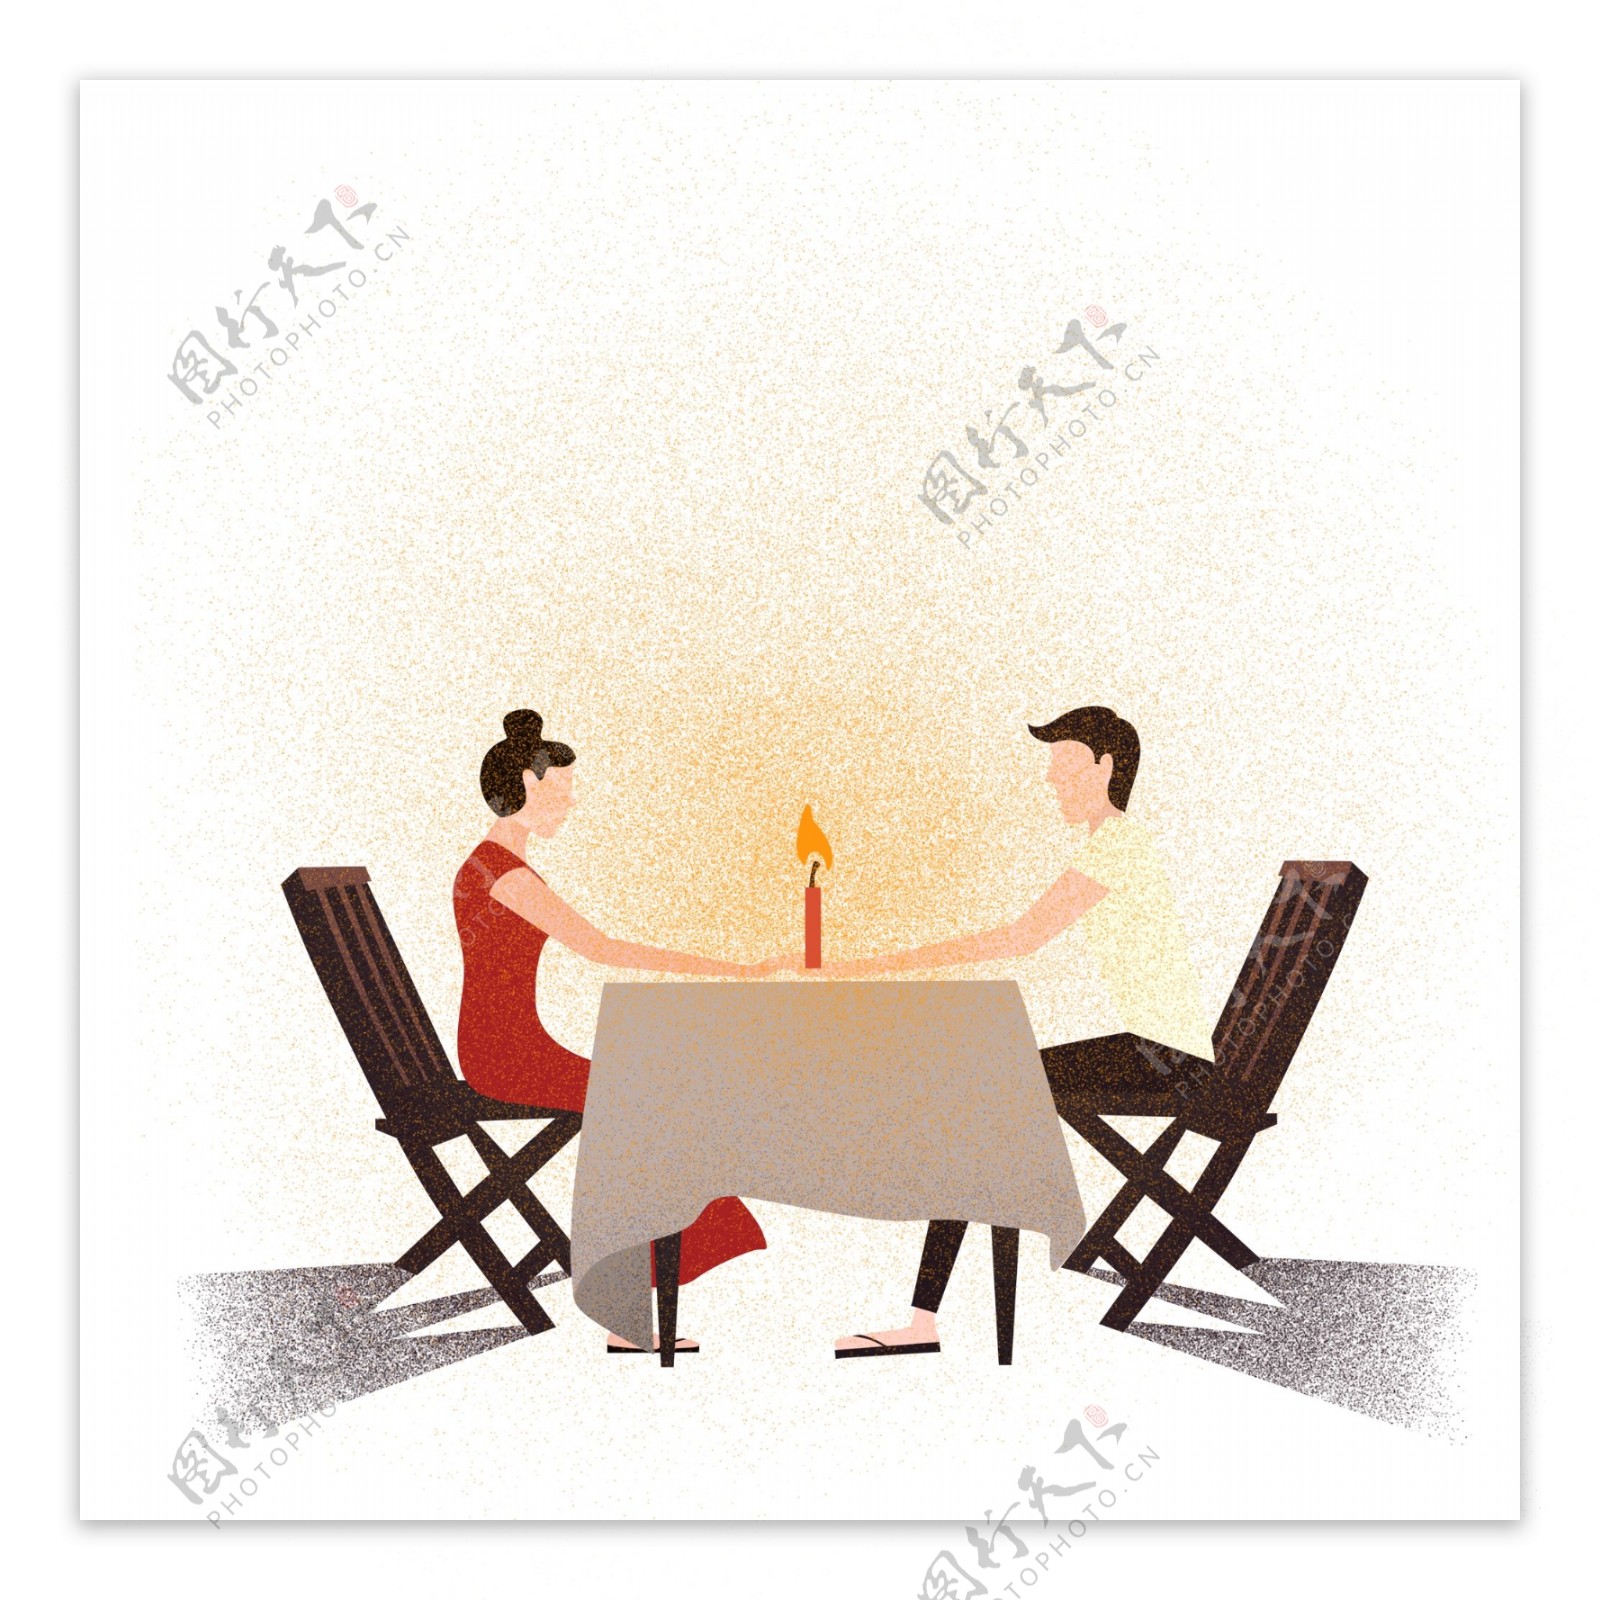 情侣约会烛光晚餐浪漫美好